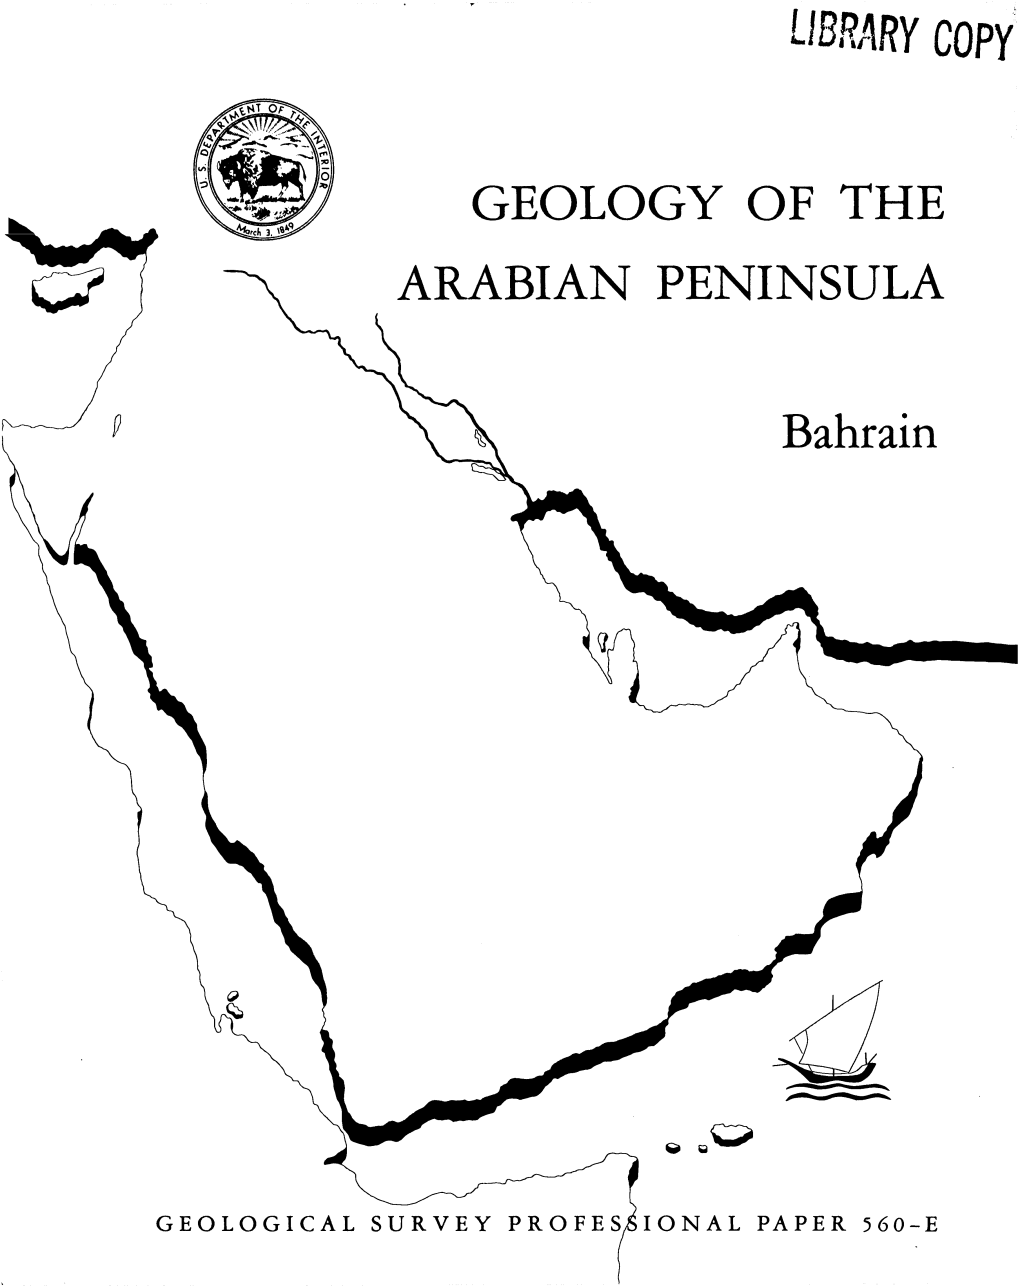 Geology of the Arabian Peninsula